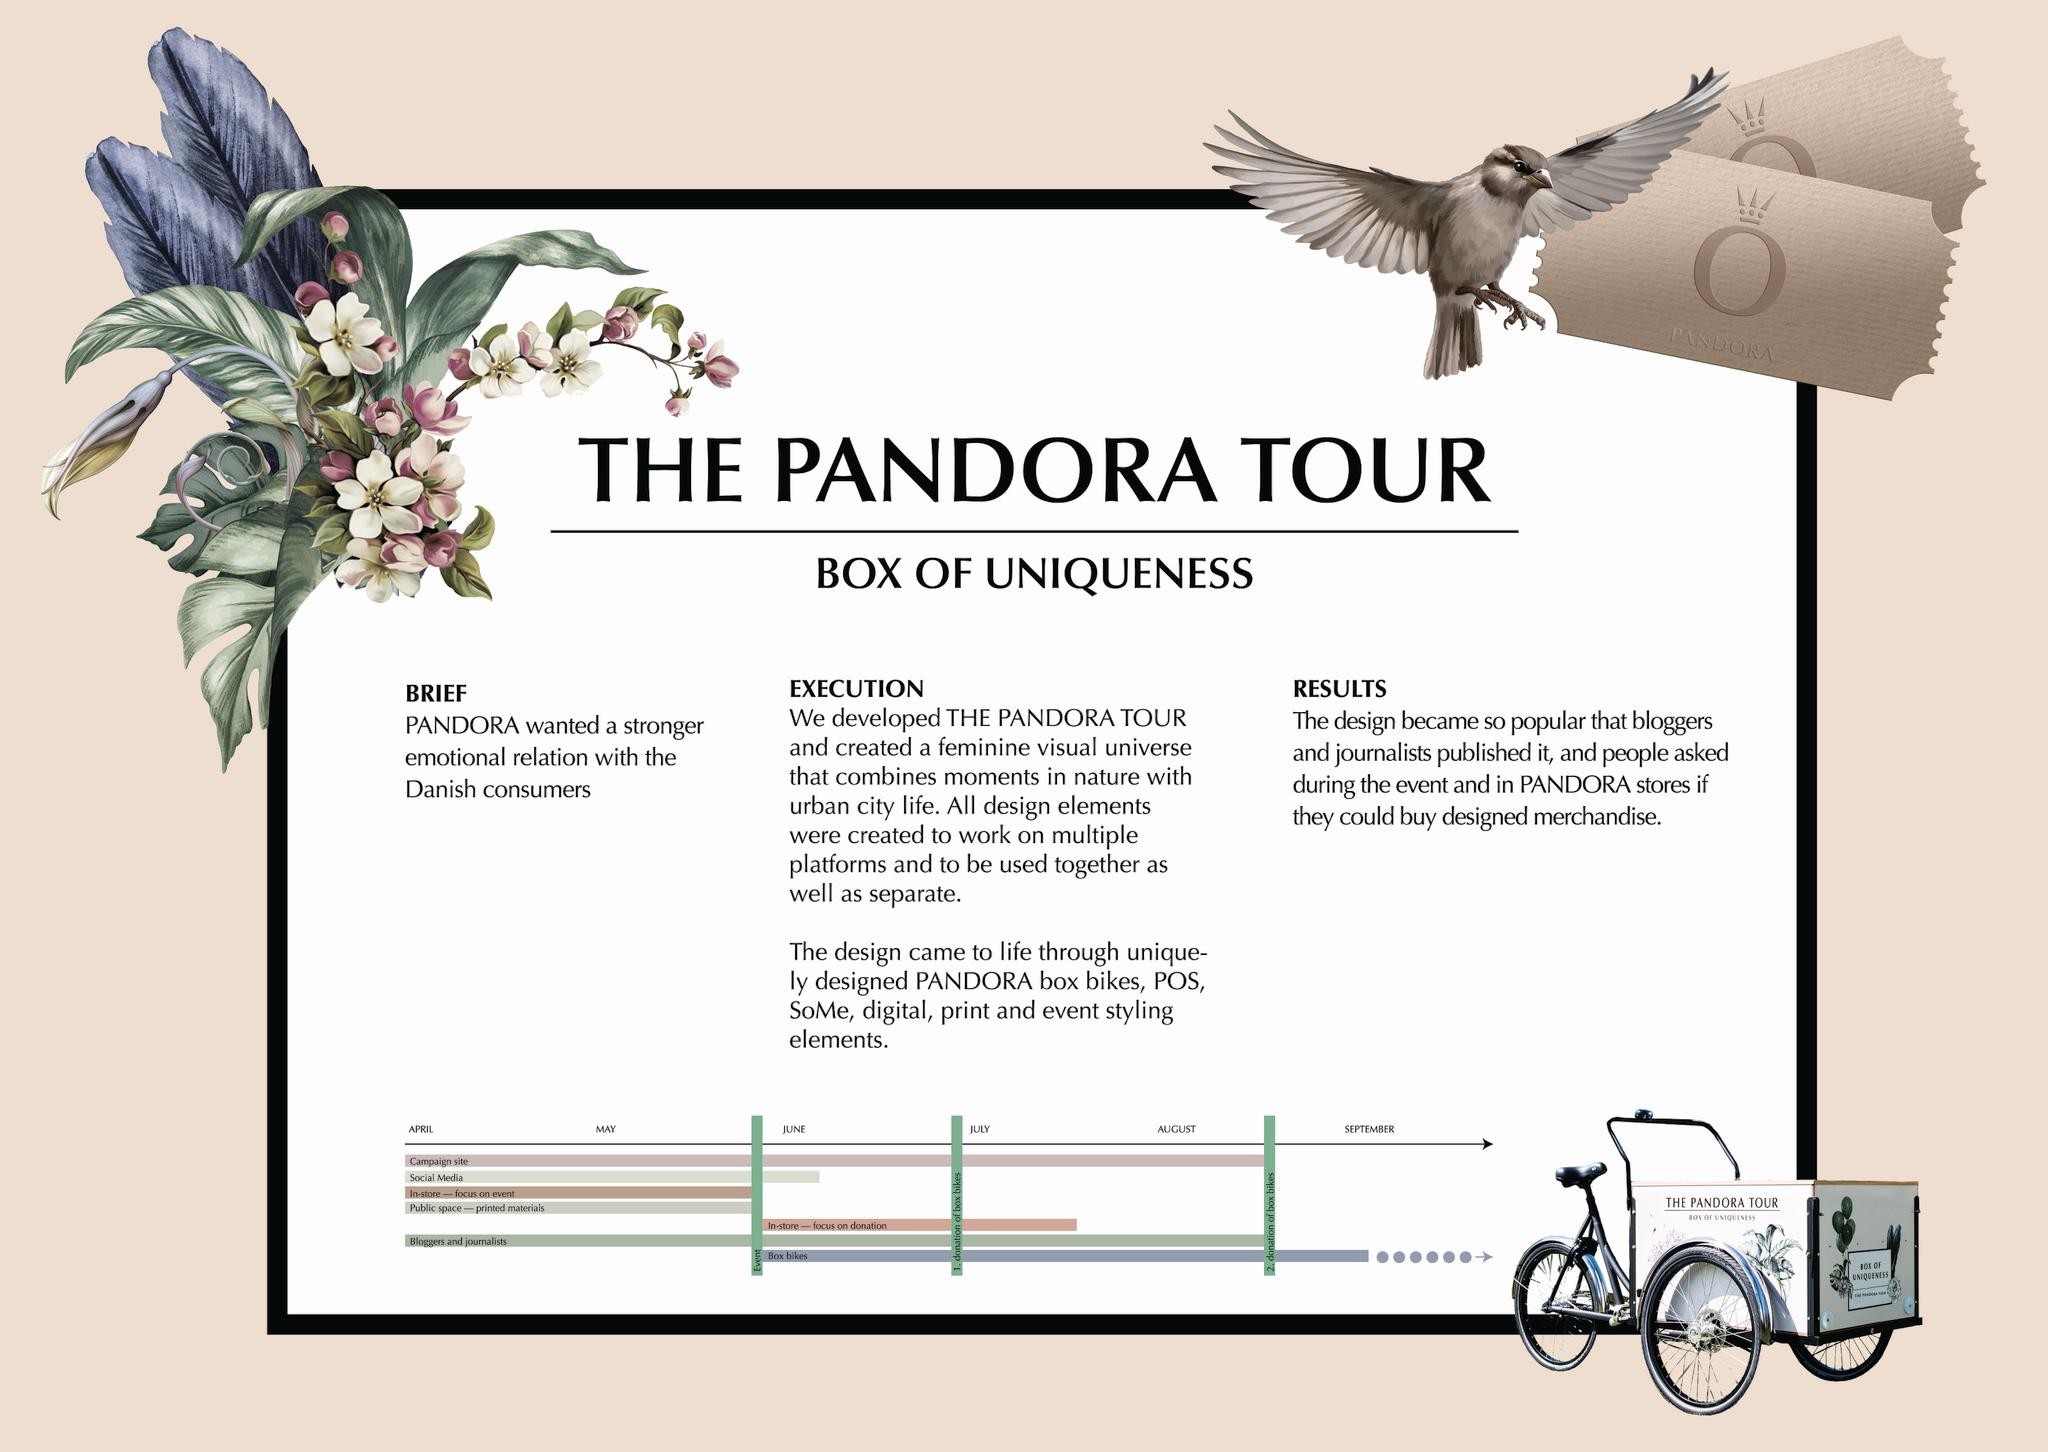 THE PANDORA TOUR